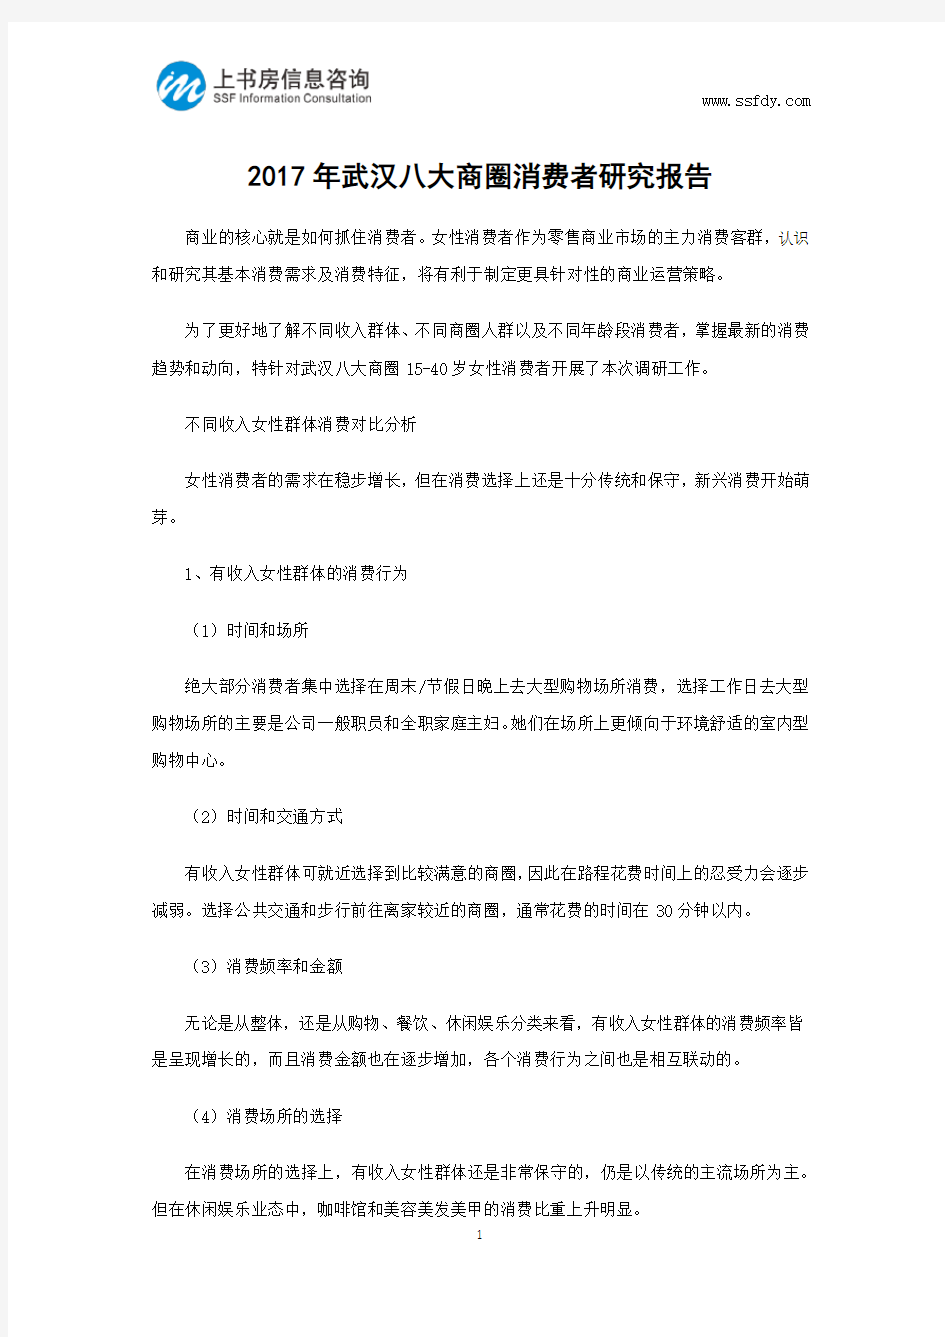 2017年武汉八大商圈消费者研究报告-上书房信息咨询